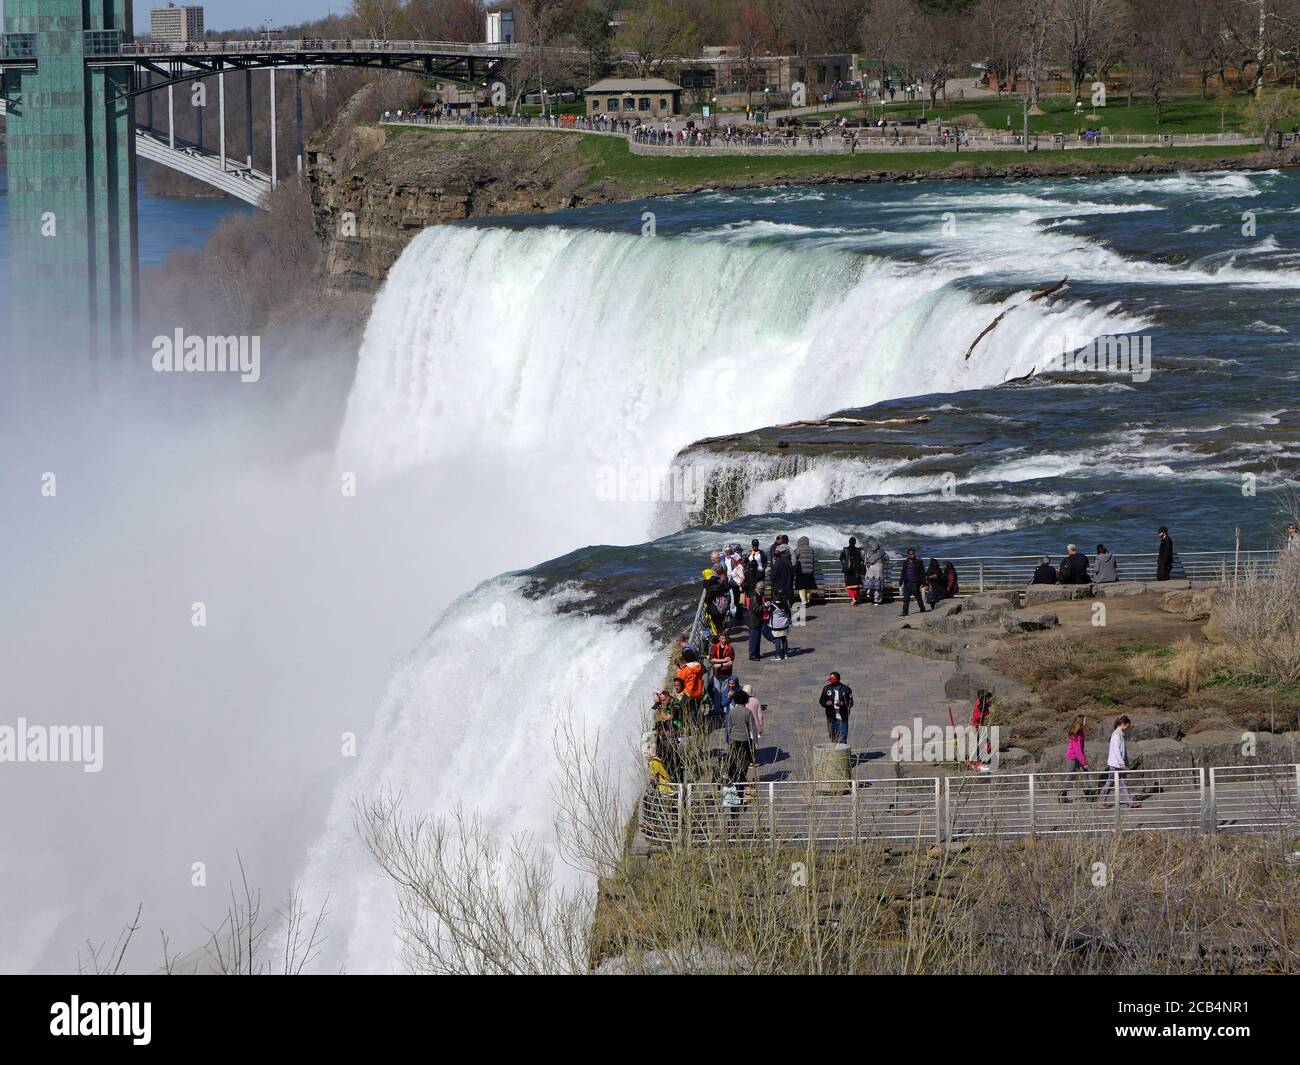 Niagara Falls, NY, États-Unis - 5 mai 2019 : les visiteurs peuvent apprécier d'être près du bord des chutes sur cette plate-forme d'observation. Banque D'Images